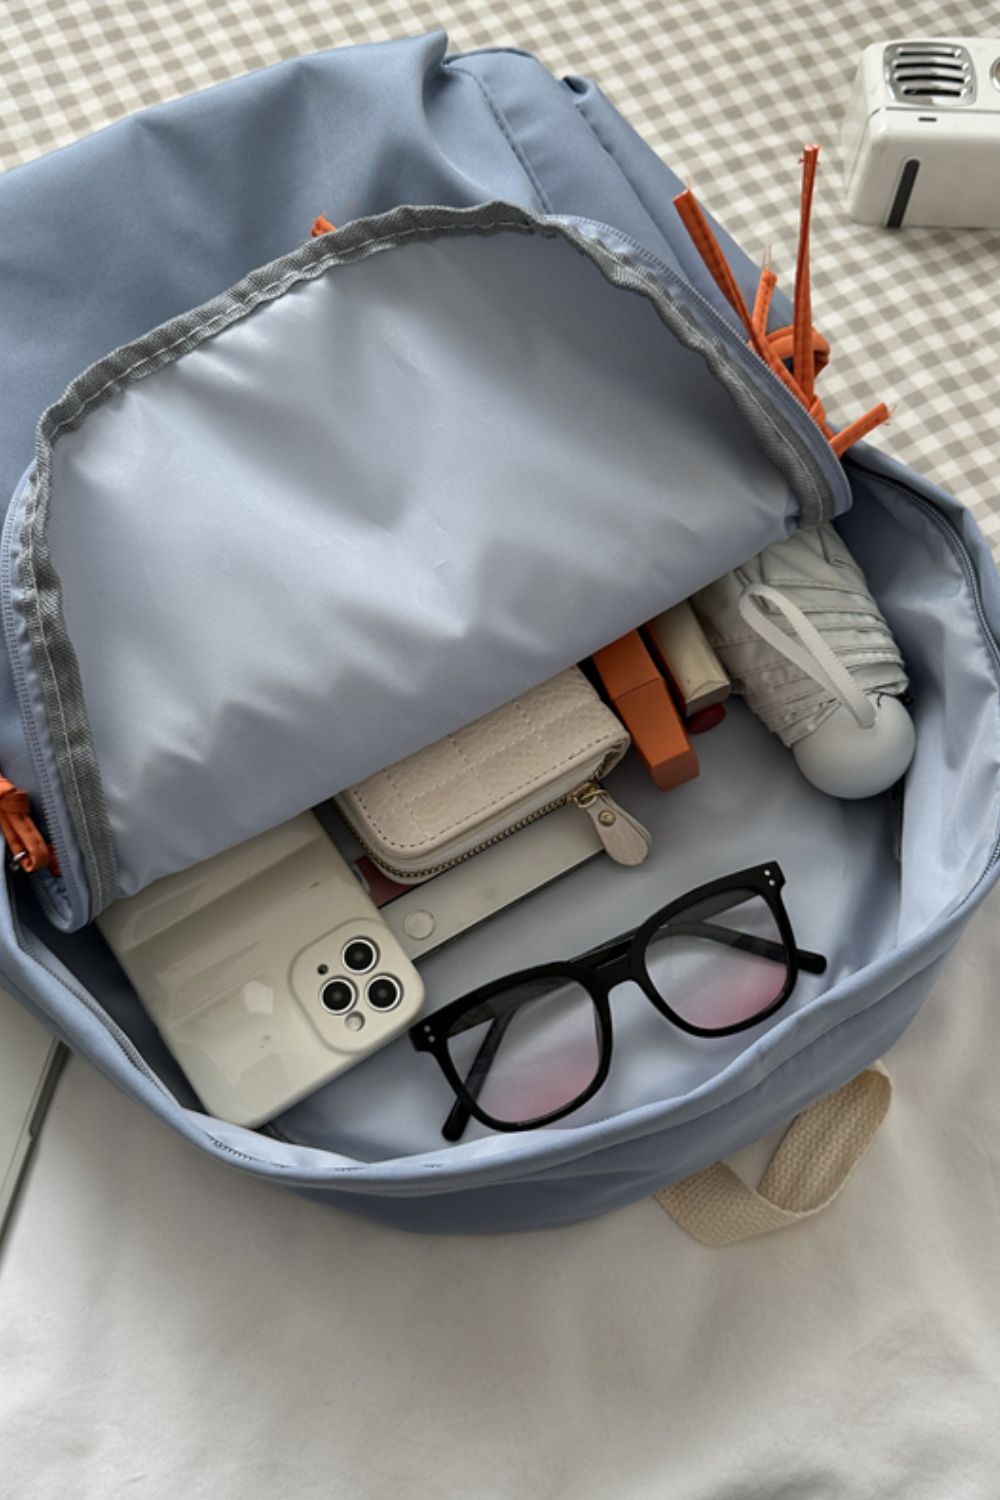 Polyester Large Backpack - Handbag - FITGGINS